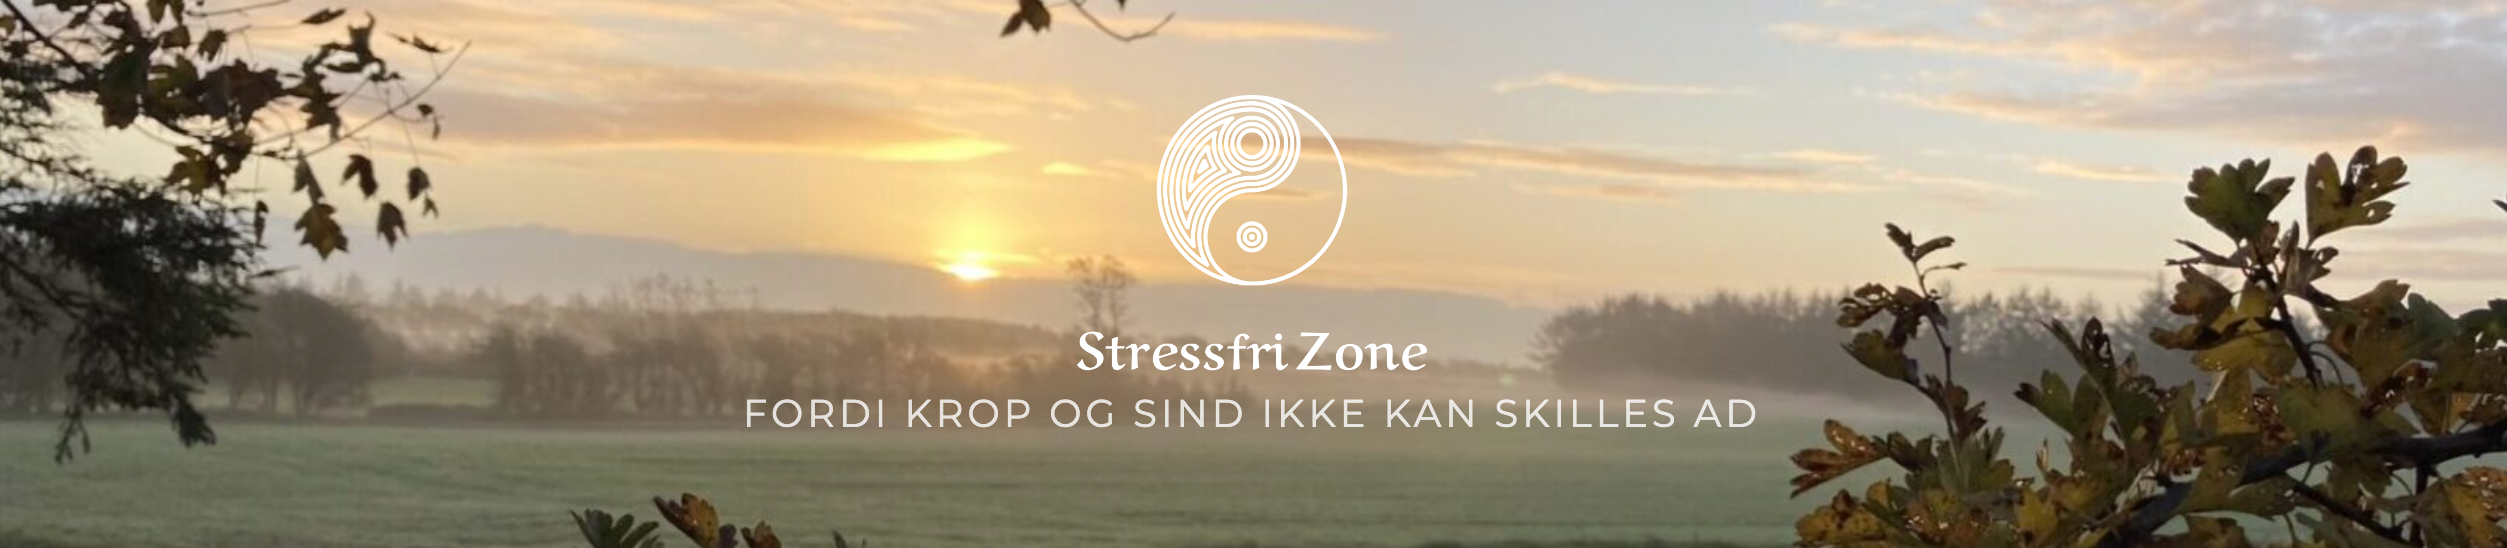 Stressfri Zone